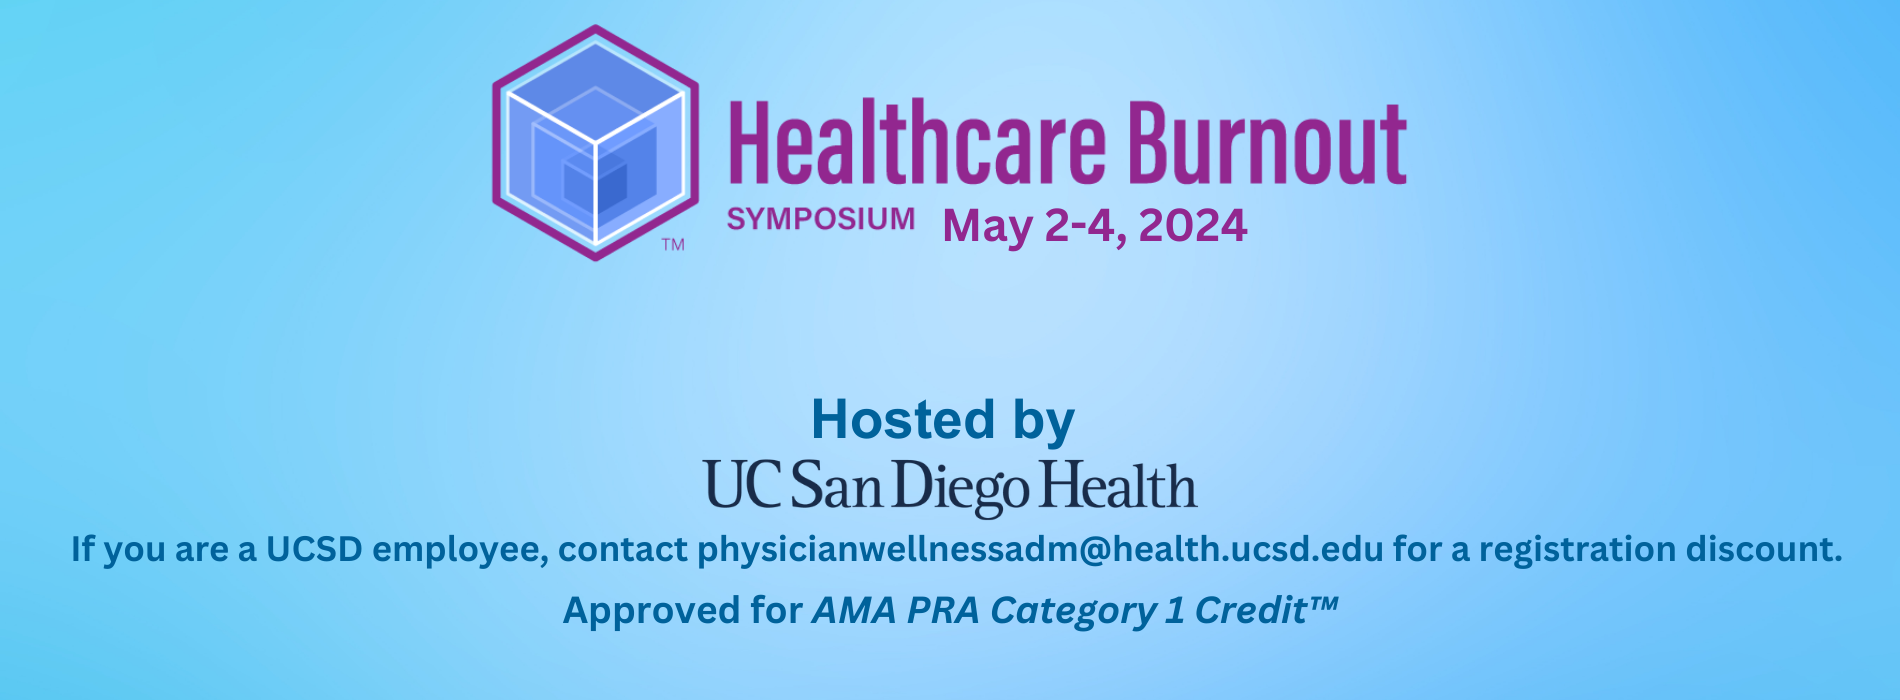 Healthcare Burnout Symposium 2024